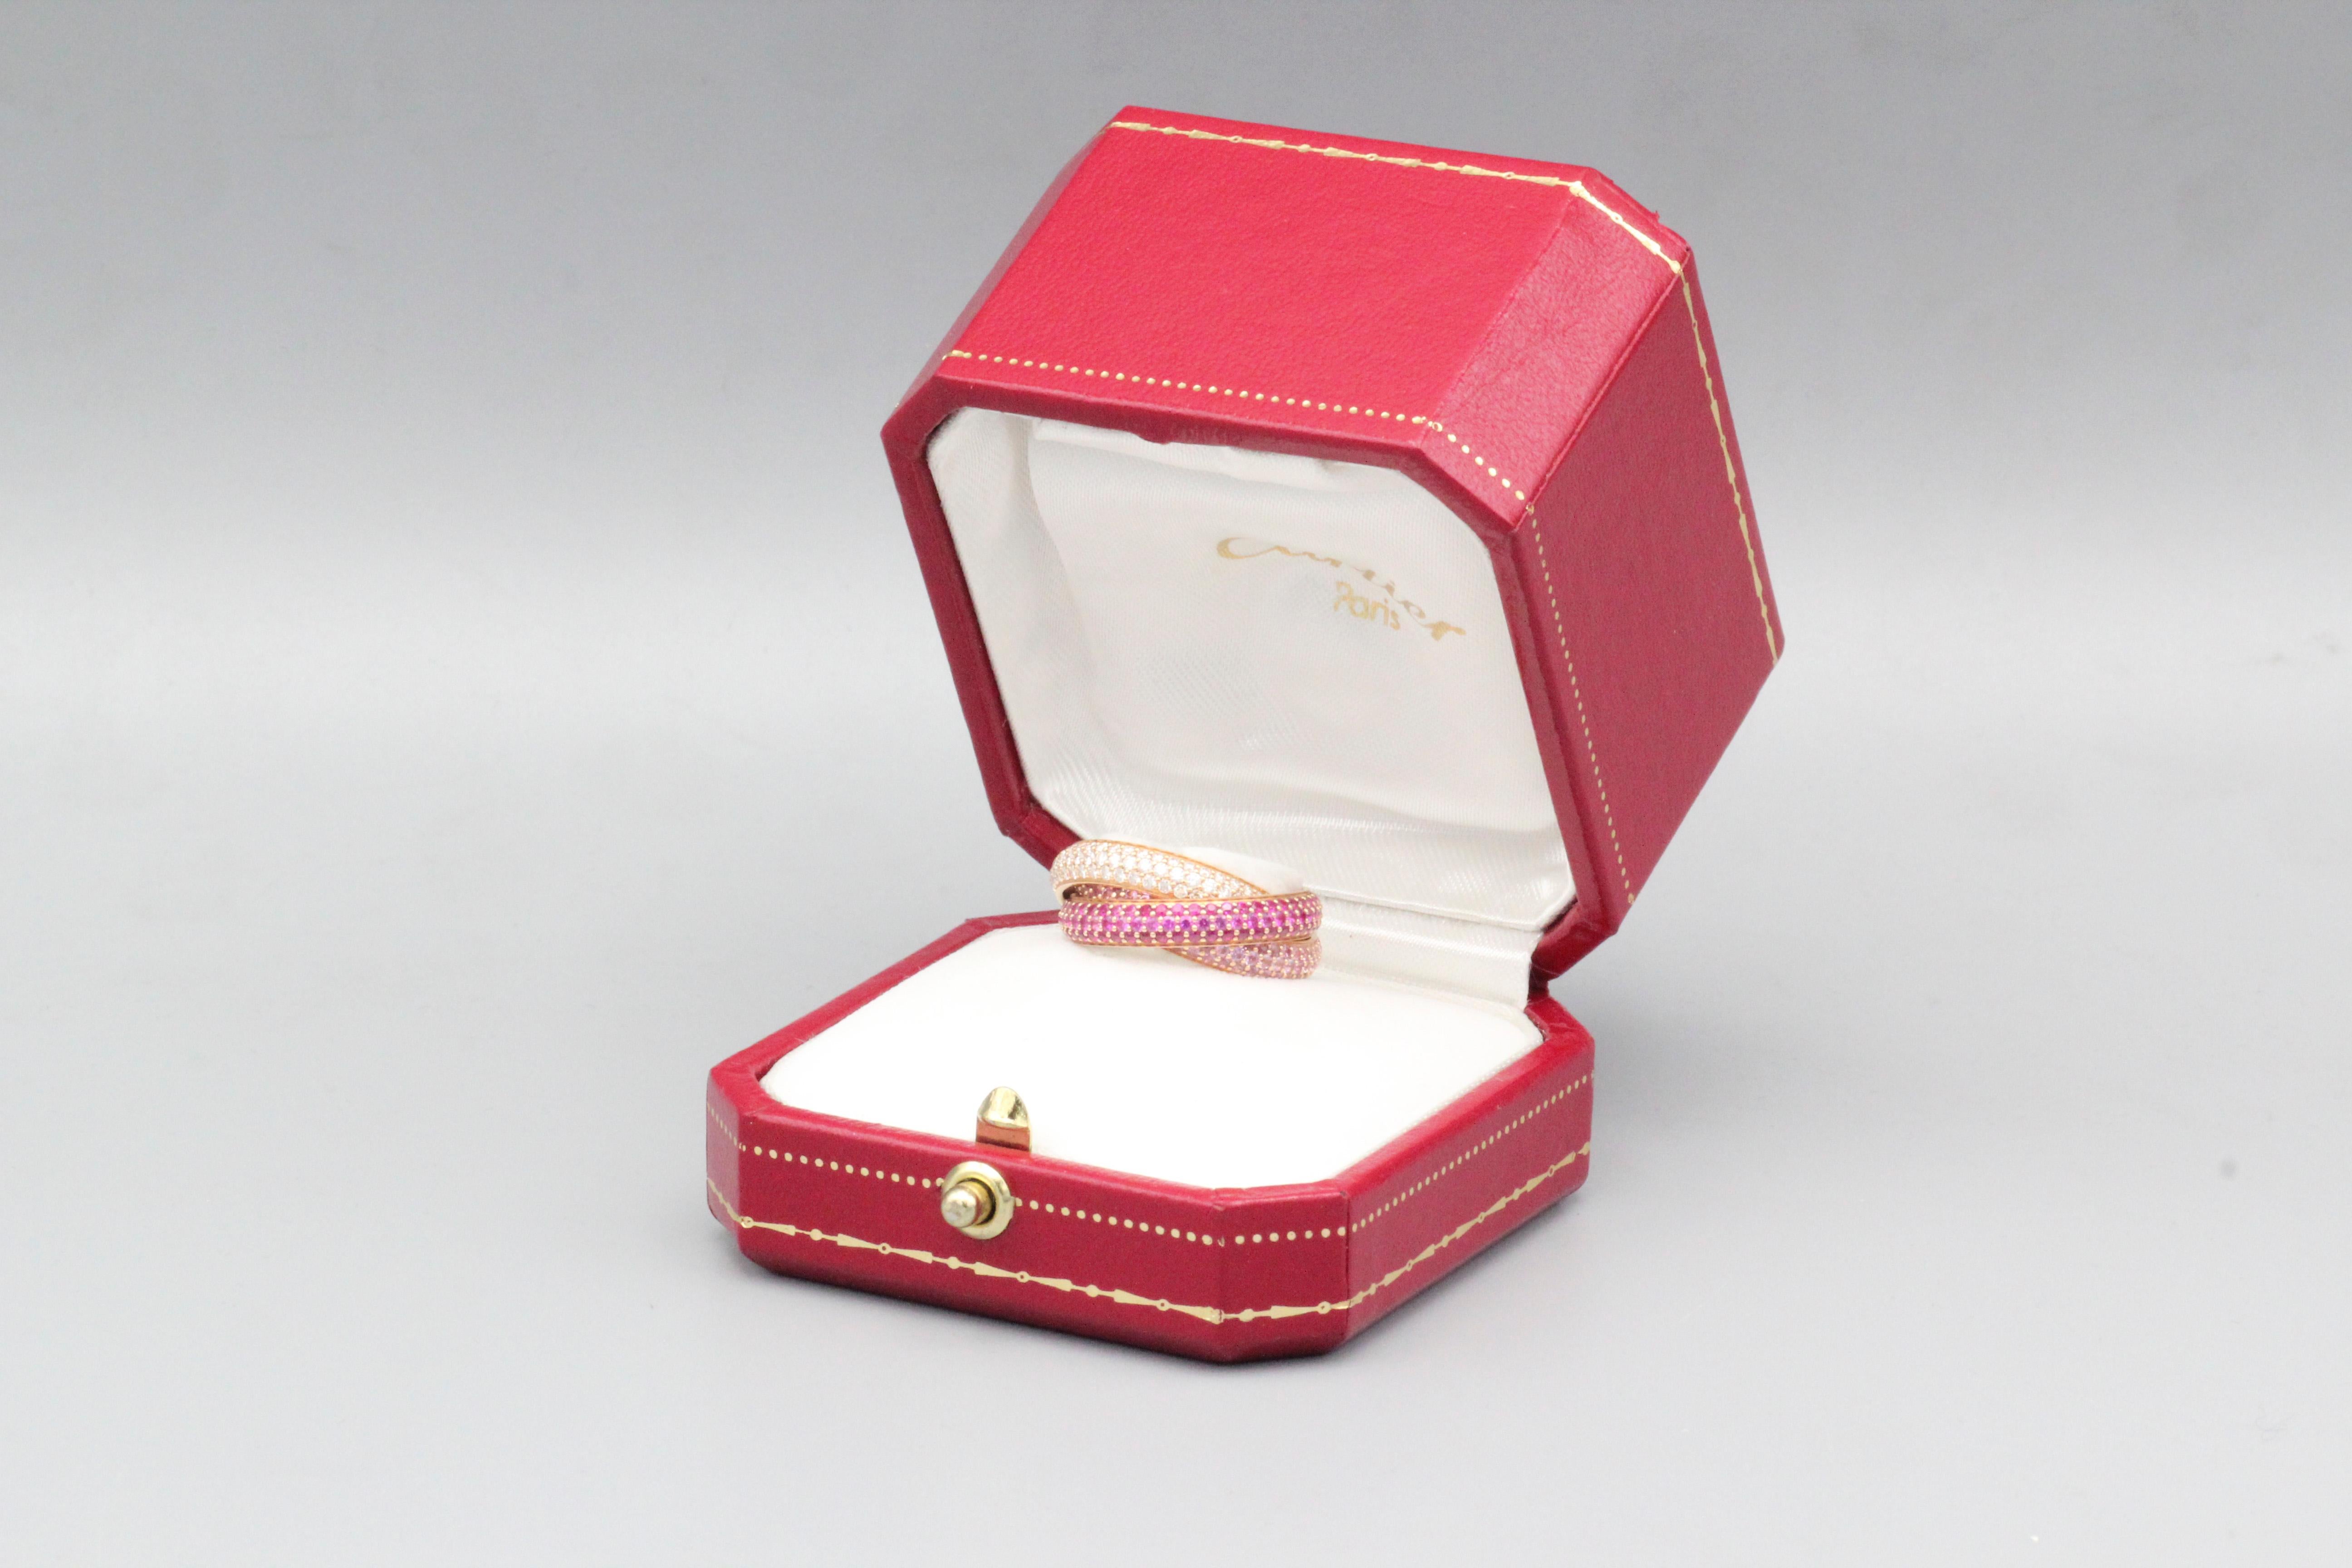 Tauchen Sie ein in die Welt des Luxus mit dem Cartier Trinity Rubin-Rosa-Saphir-Diamantband aus 18 Karat Roségold - ein Zeugnis der ikonischen Cartier Trinity Collection'S, die kostbare Edelsteine mit exquisiter Handwerkskunst verbindet. Dieser Ring